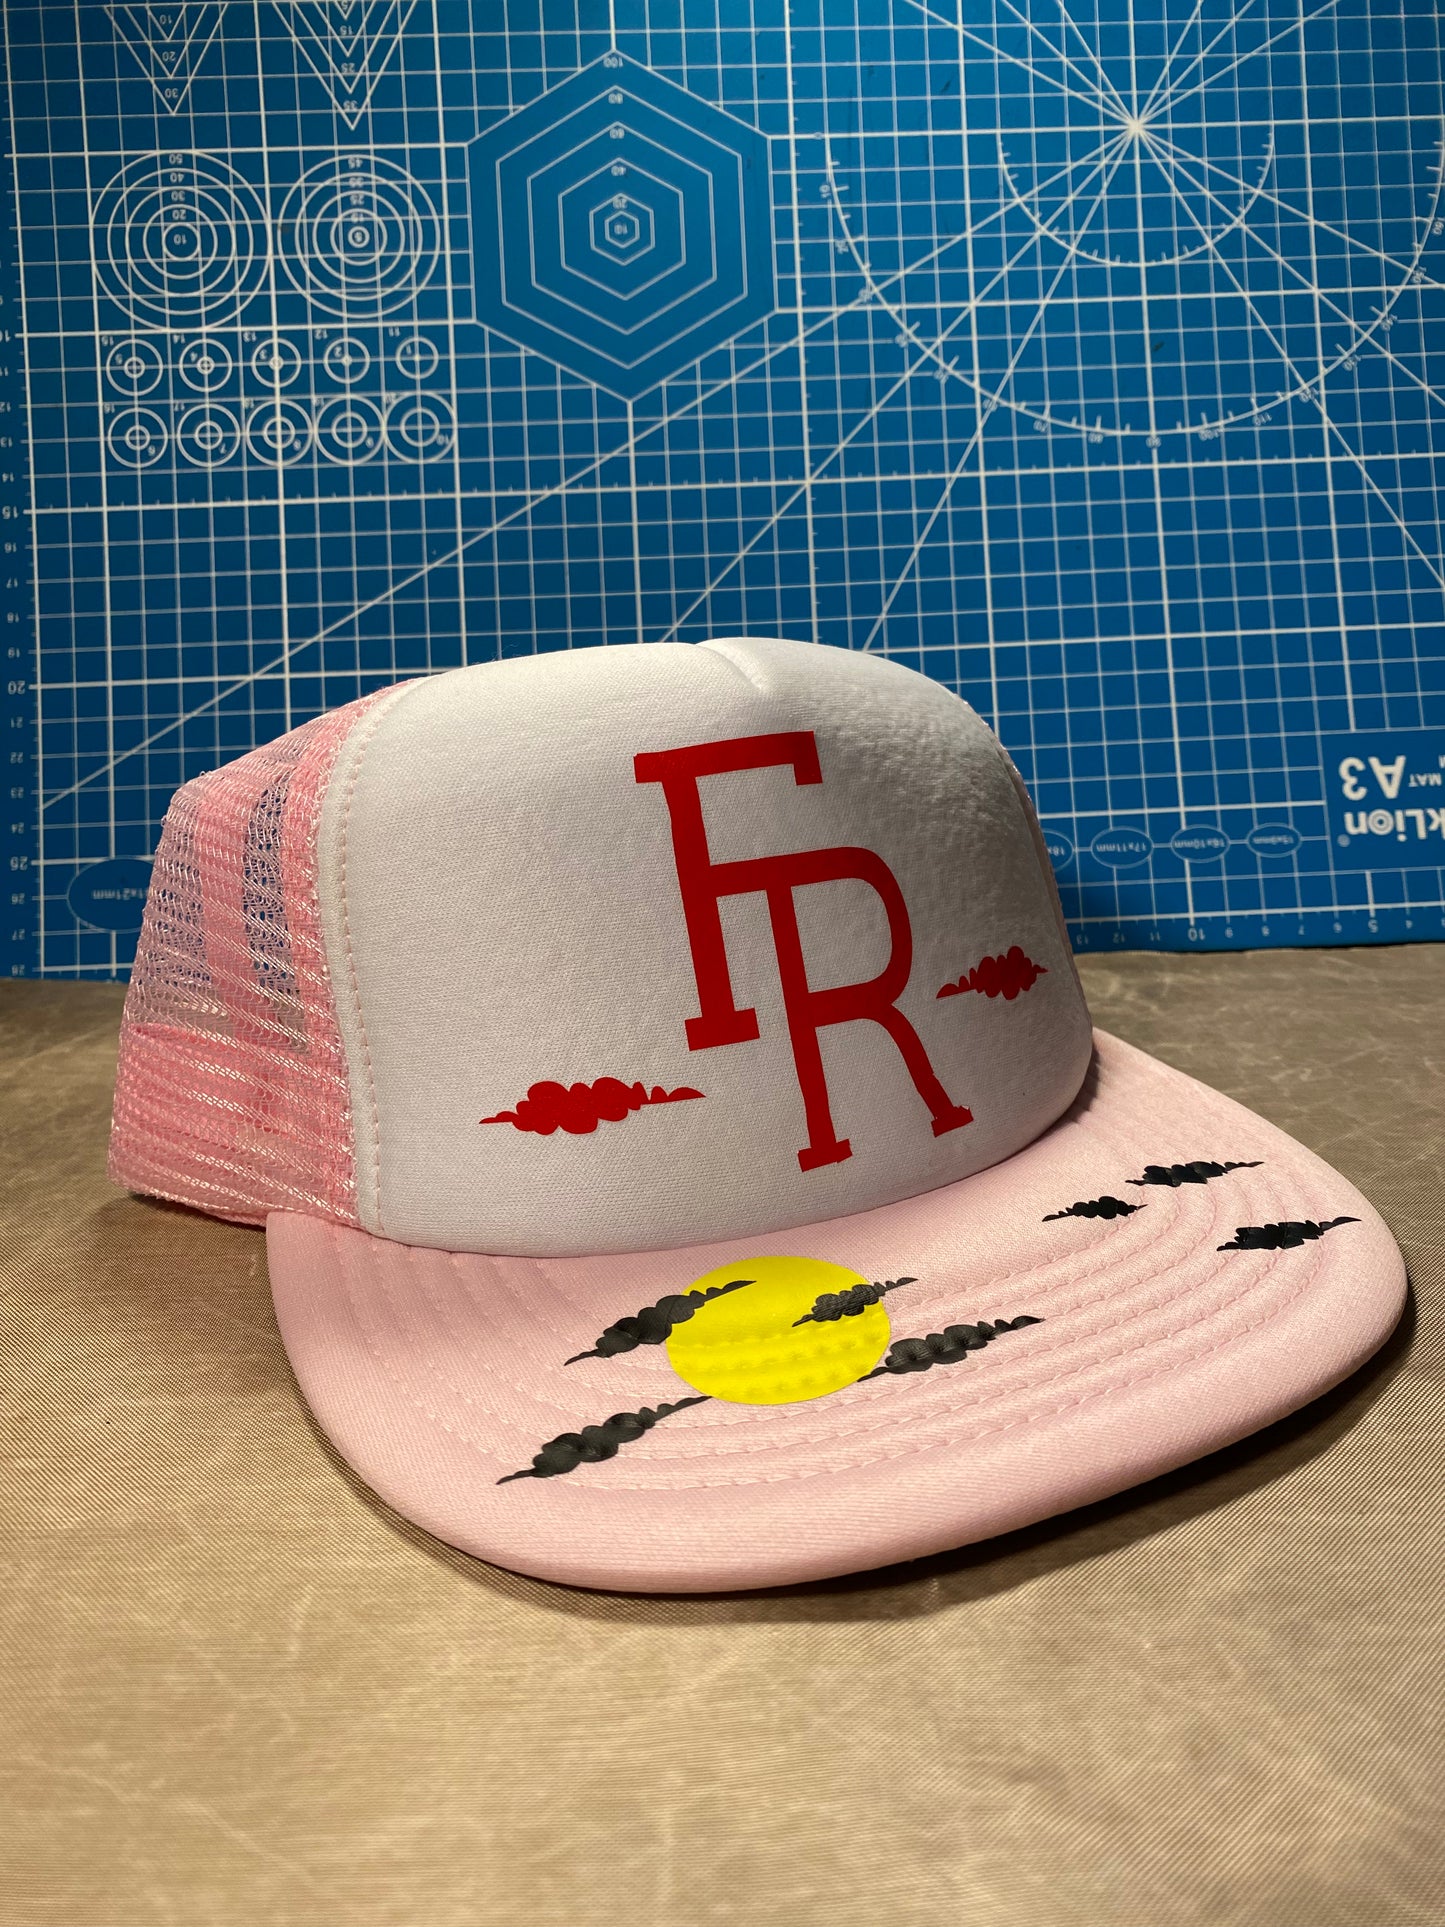 F&R Trucker Hats